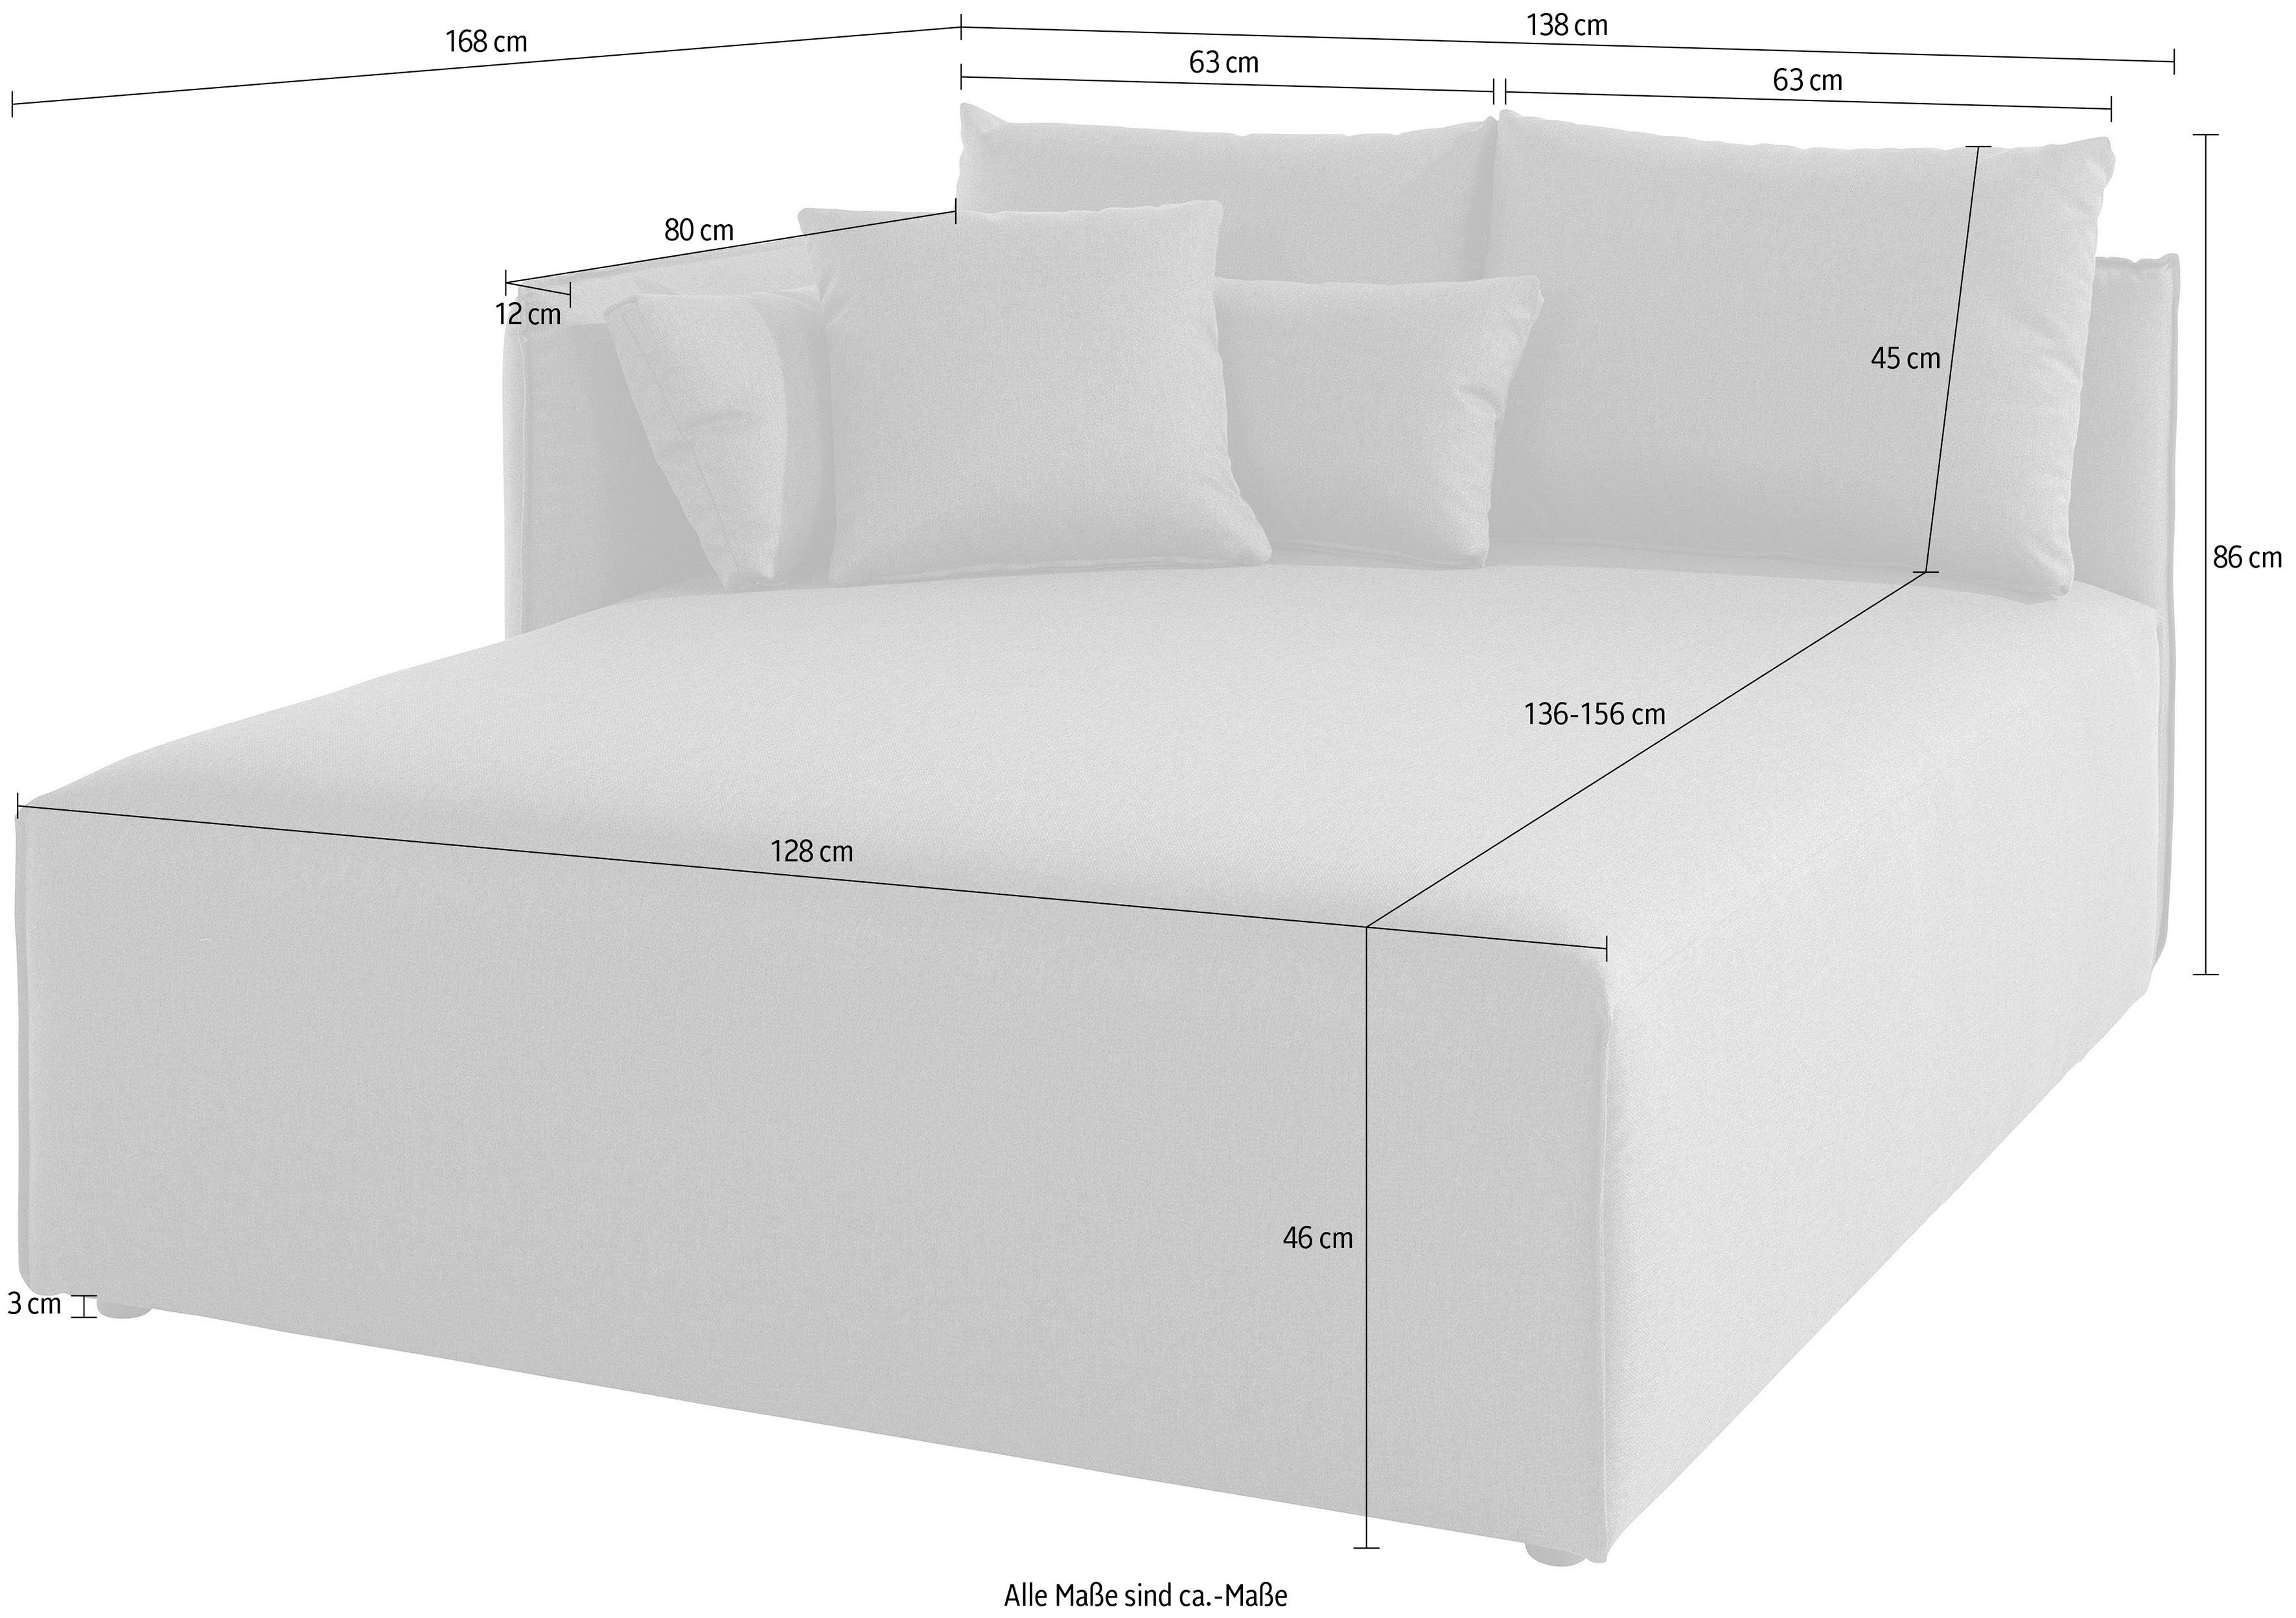 168cm mane Lounge-Modul zum andas - Nöre, Tiefe Zusammenstellen, eigenen 138cm, Breite